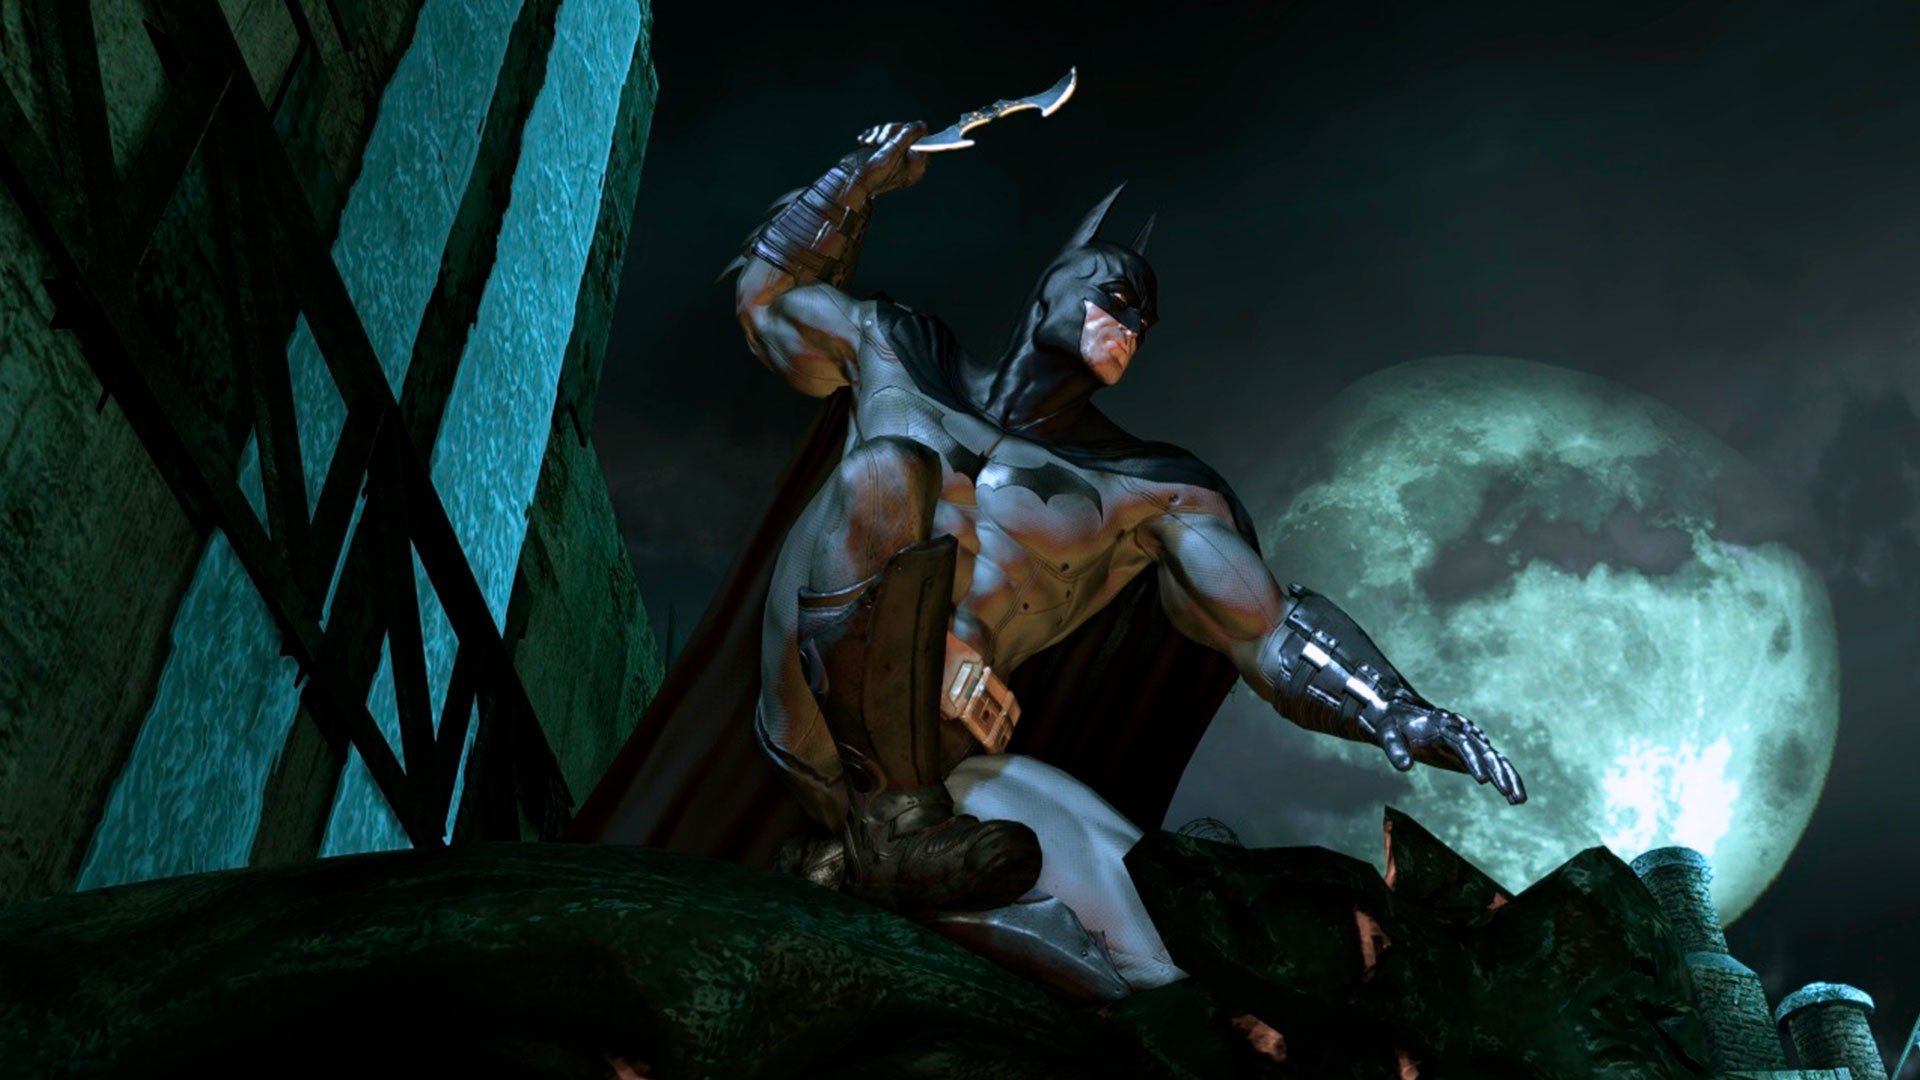 TRADUÇÃO PARA O PORTUGUÊS BR :: Batman: Arkham Asylum GOTY Edition General  Discussions